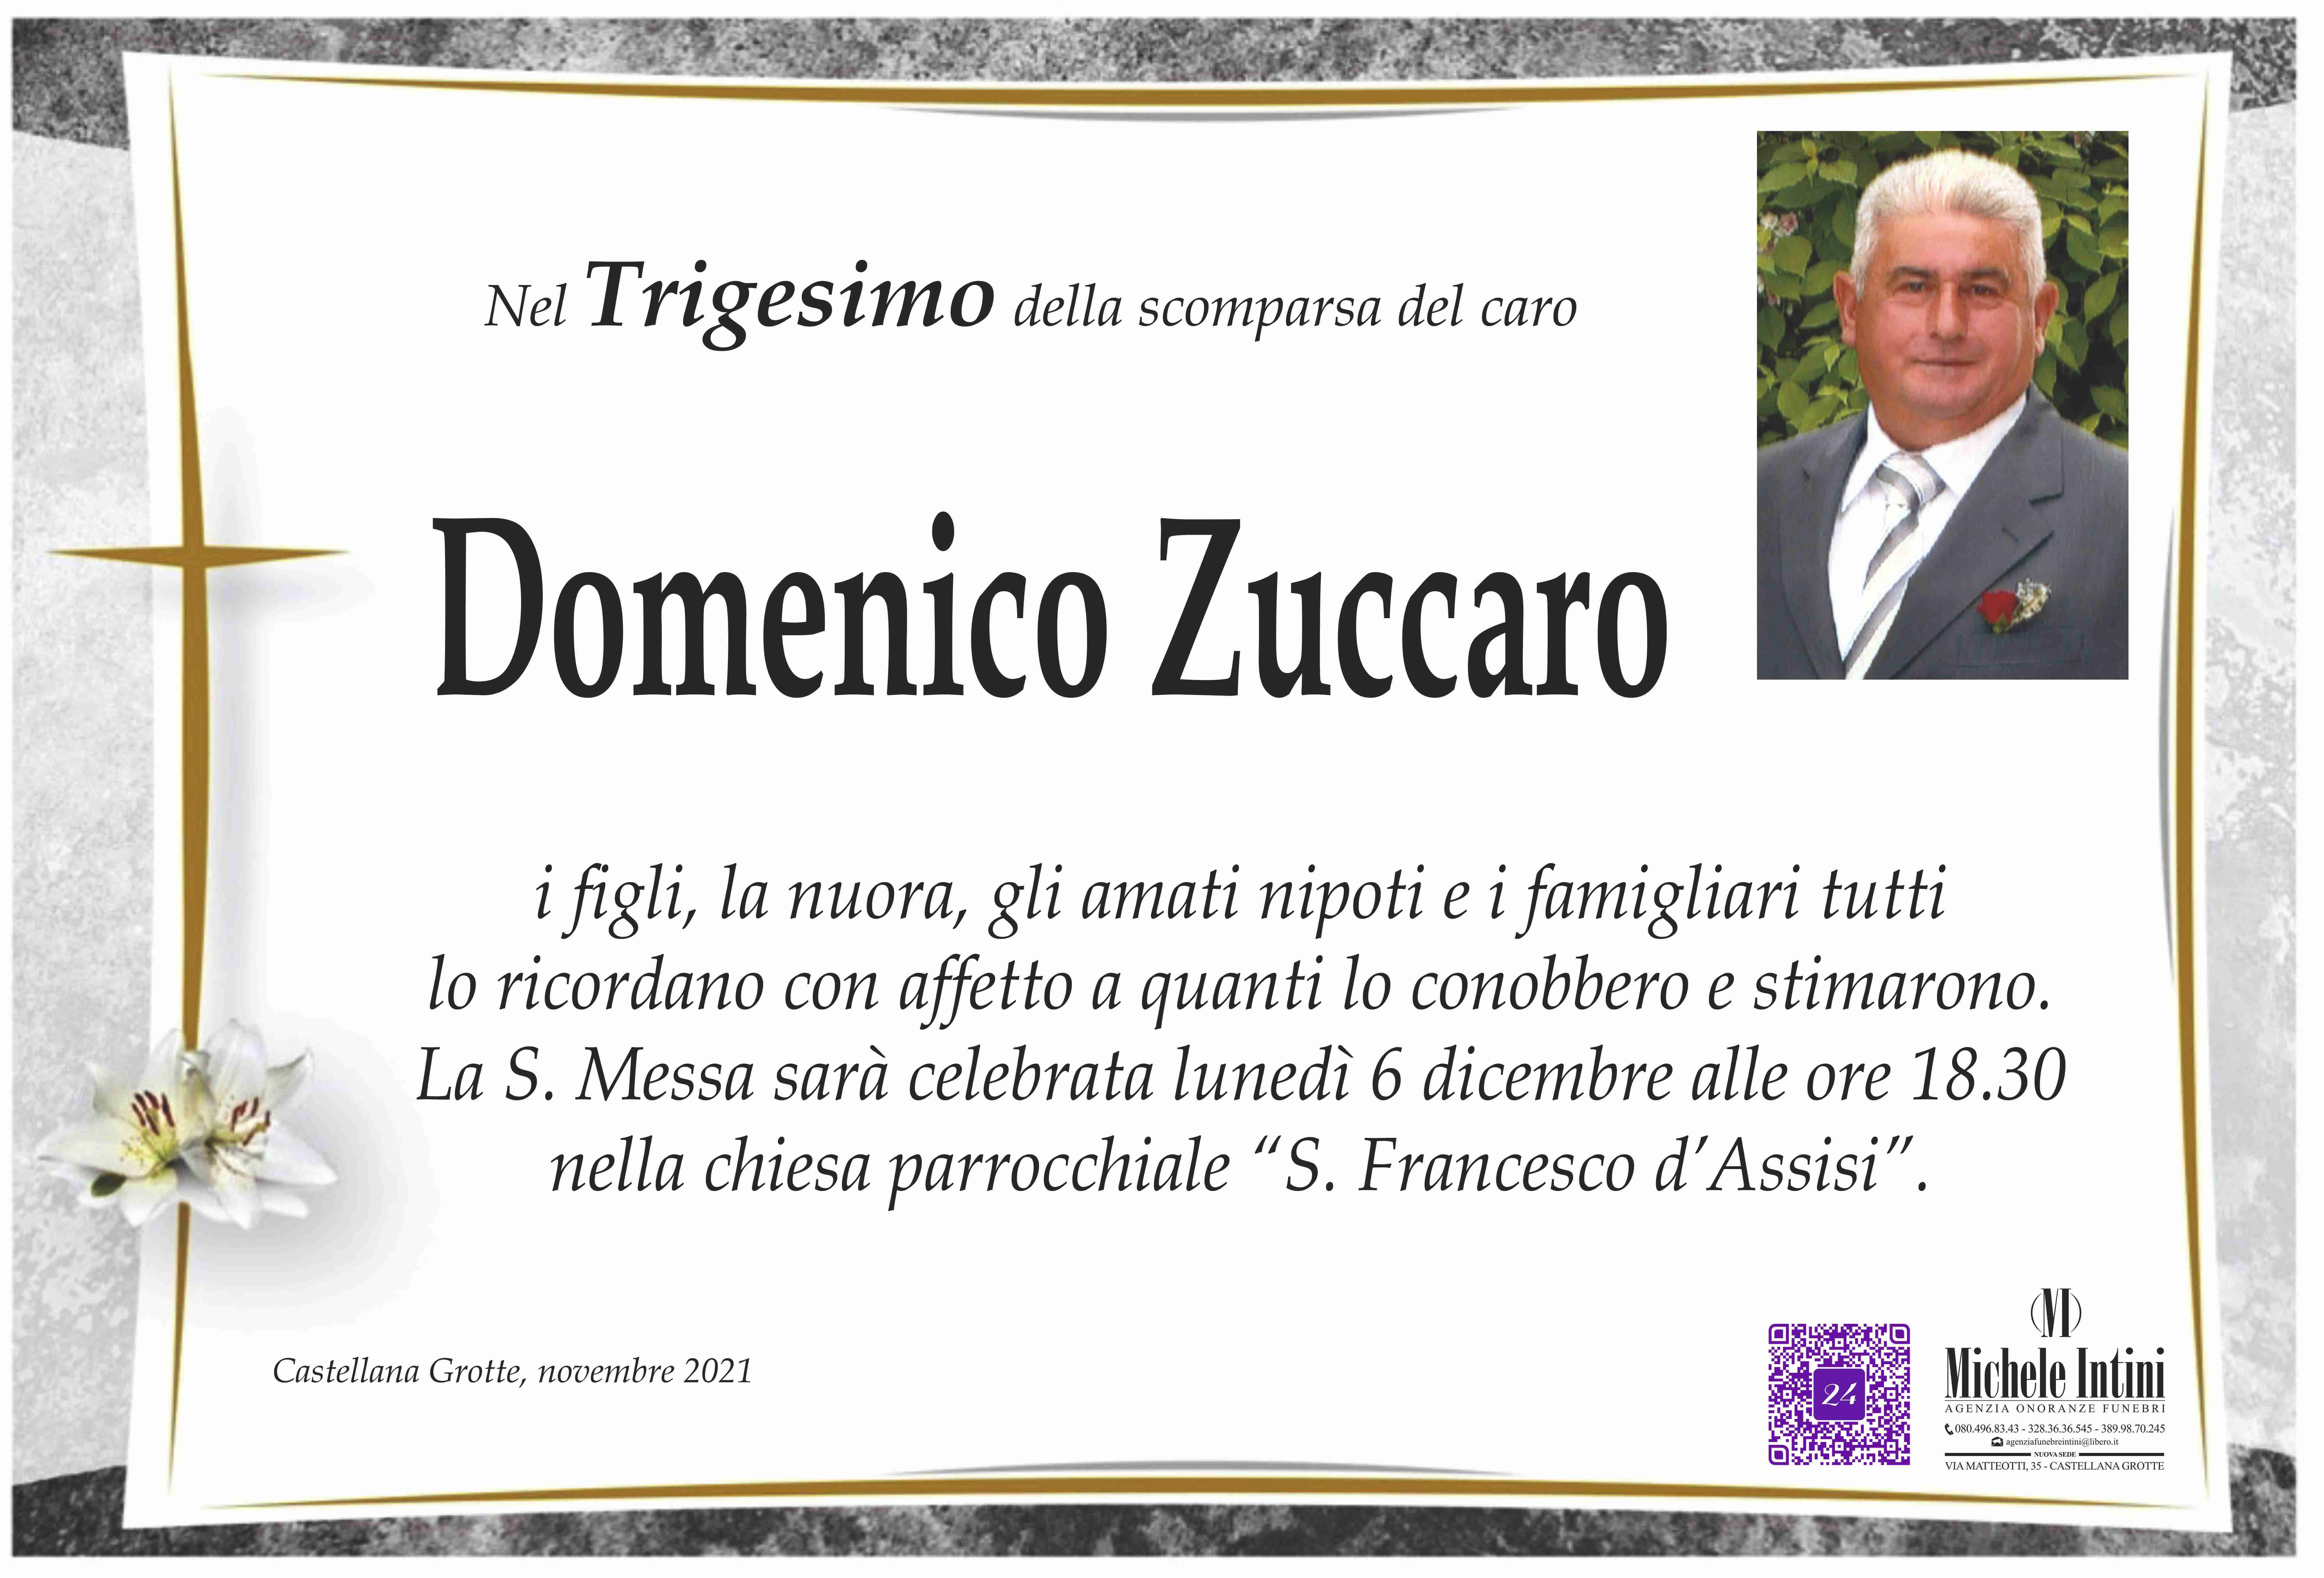 Domenico Zuccaro